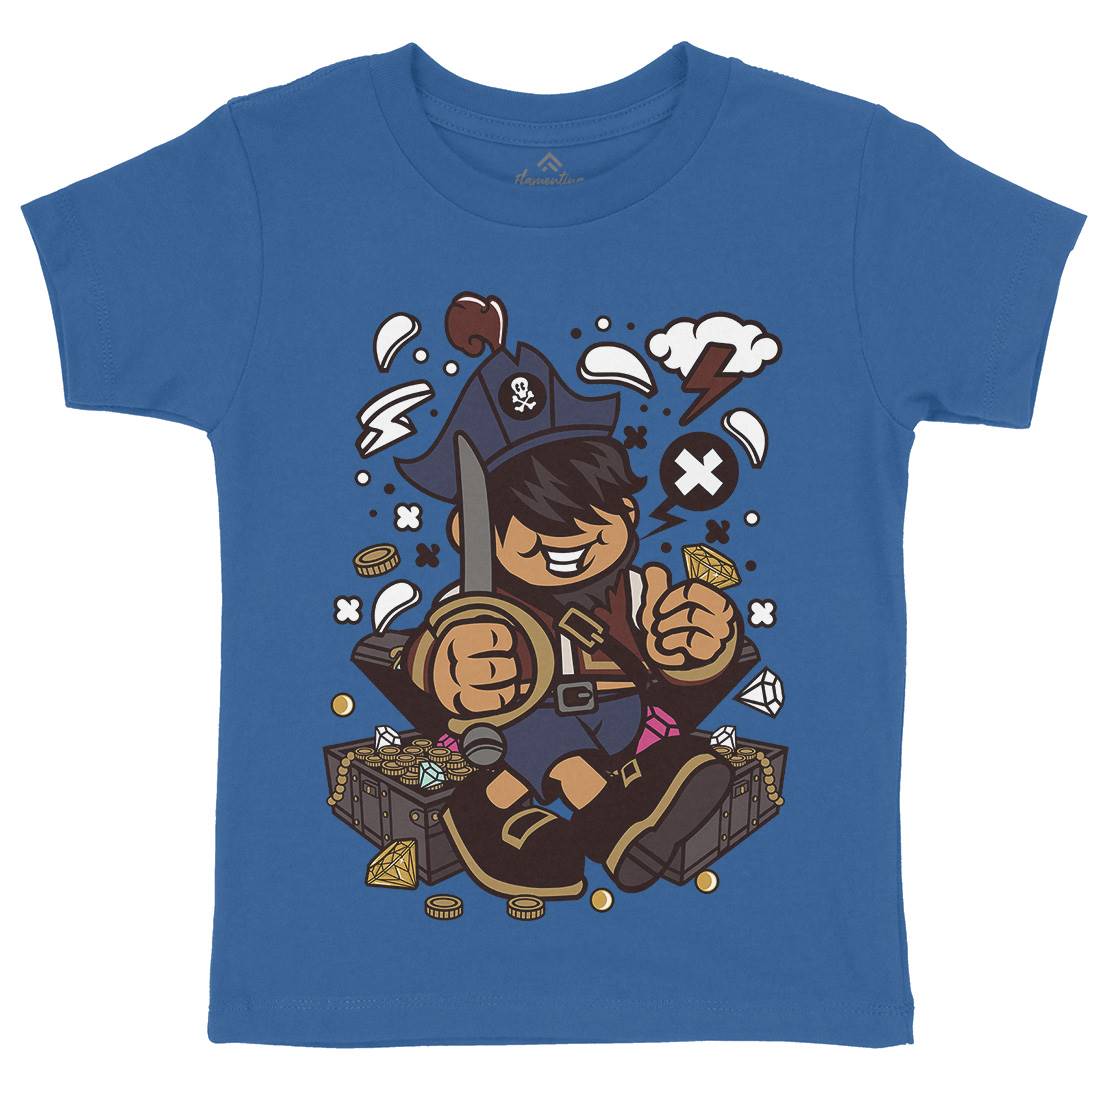 Pirate Kid Kids Crew Neck T-Shirt Navy C191